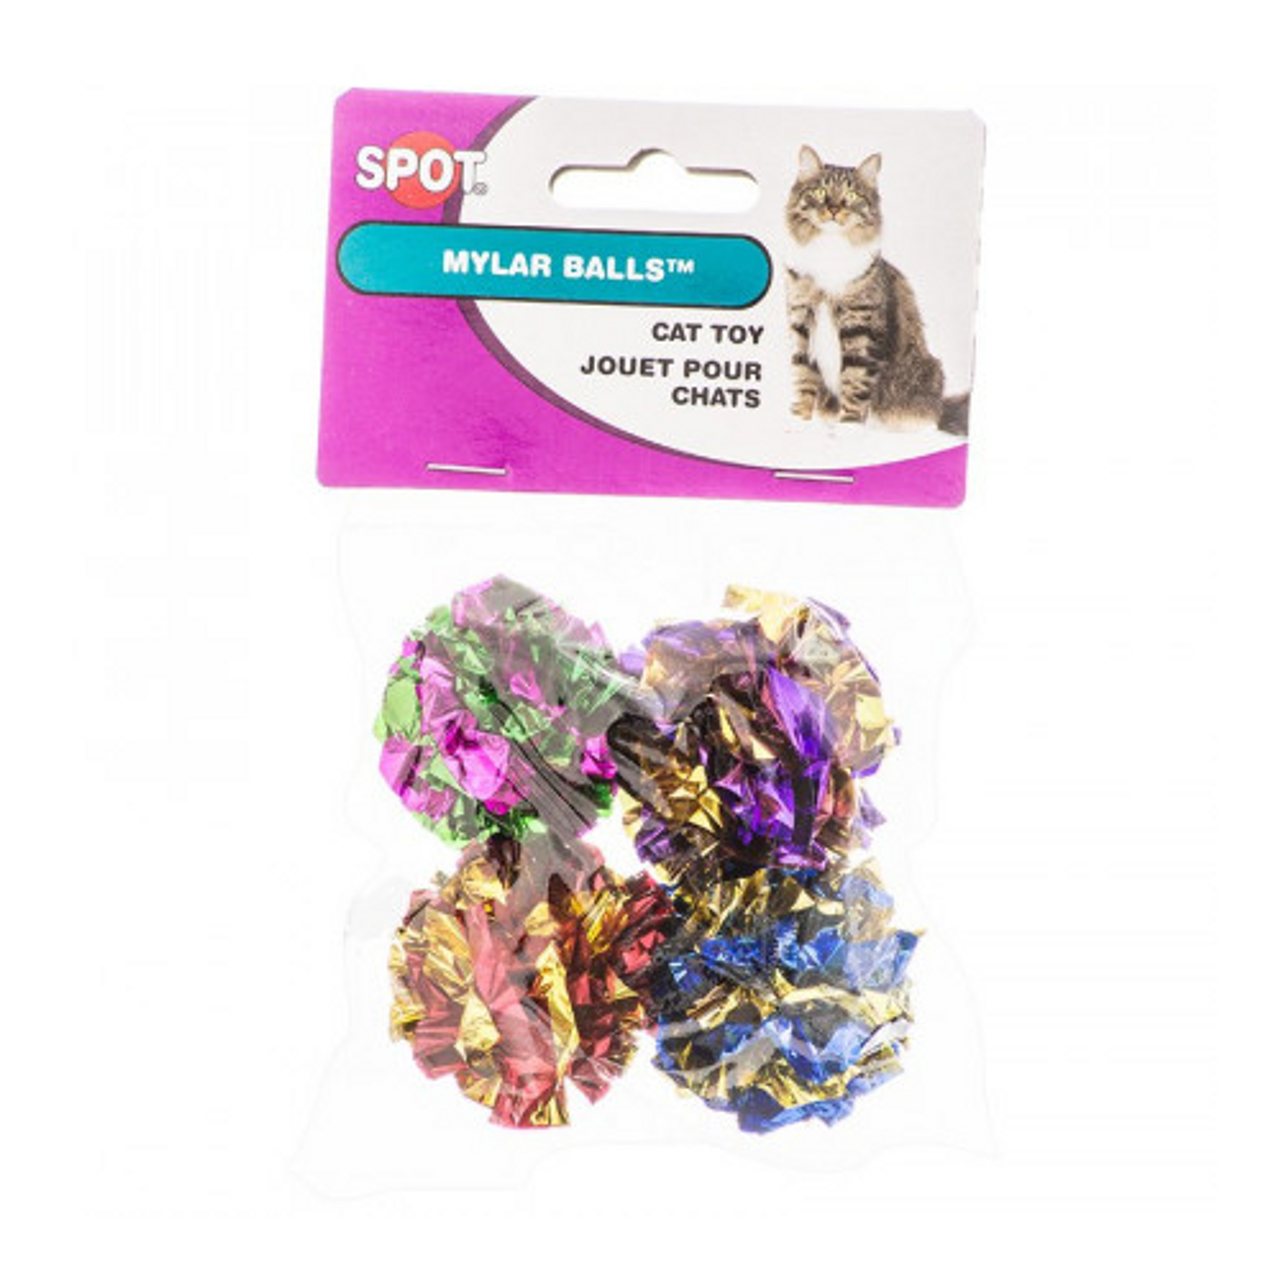 Ethical Products Spot Mylar Balls Cat Toy 4 Pk Goober Pet Direct Phoenix Az